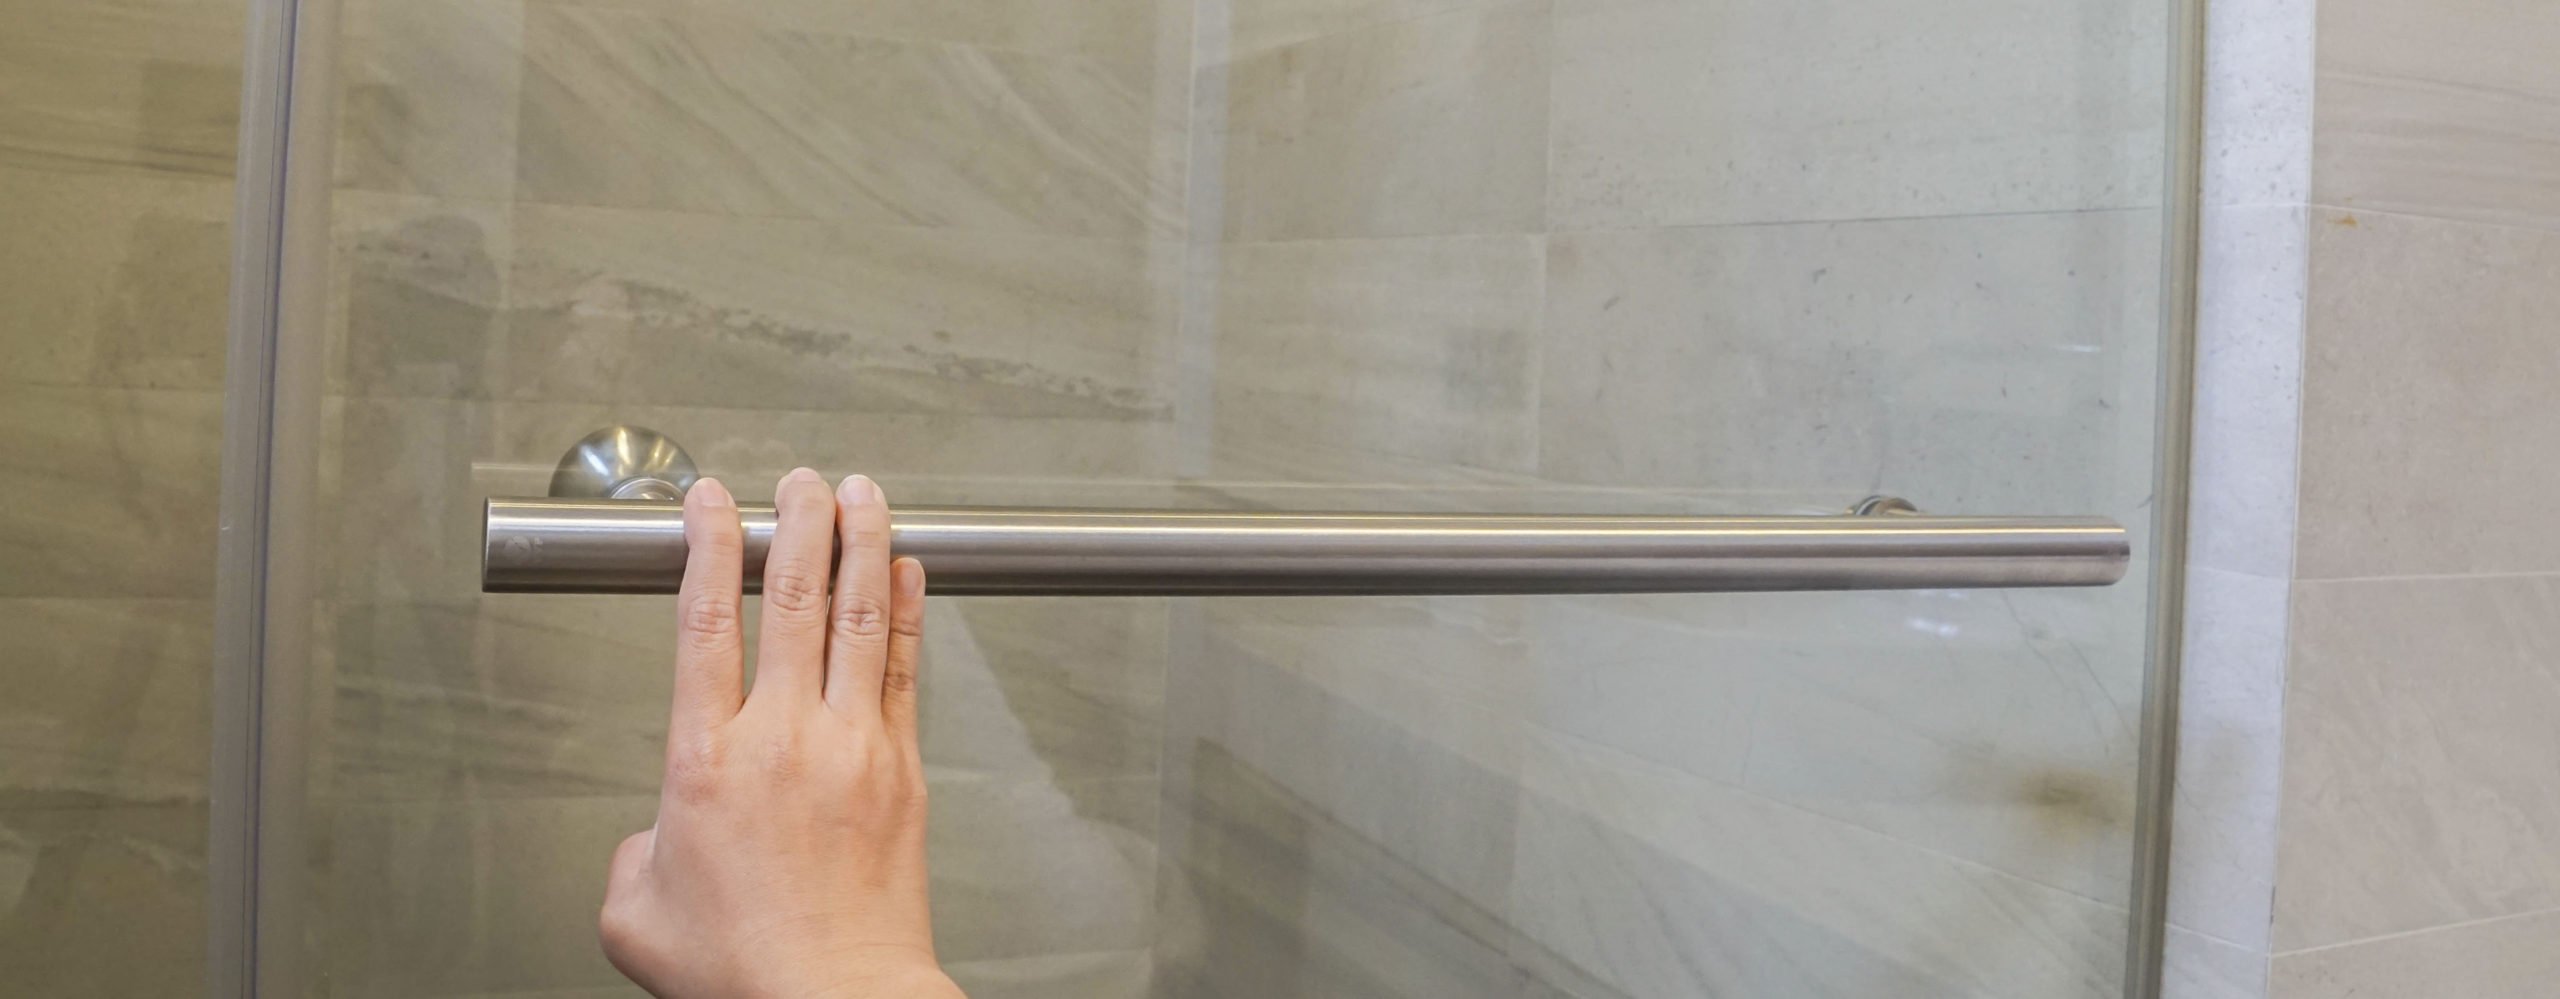 hand on shower door bar